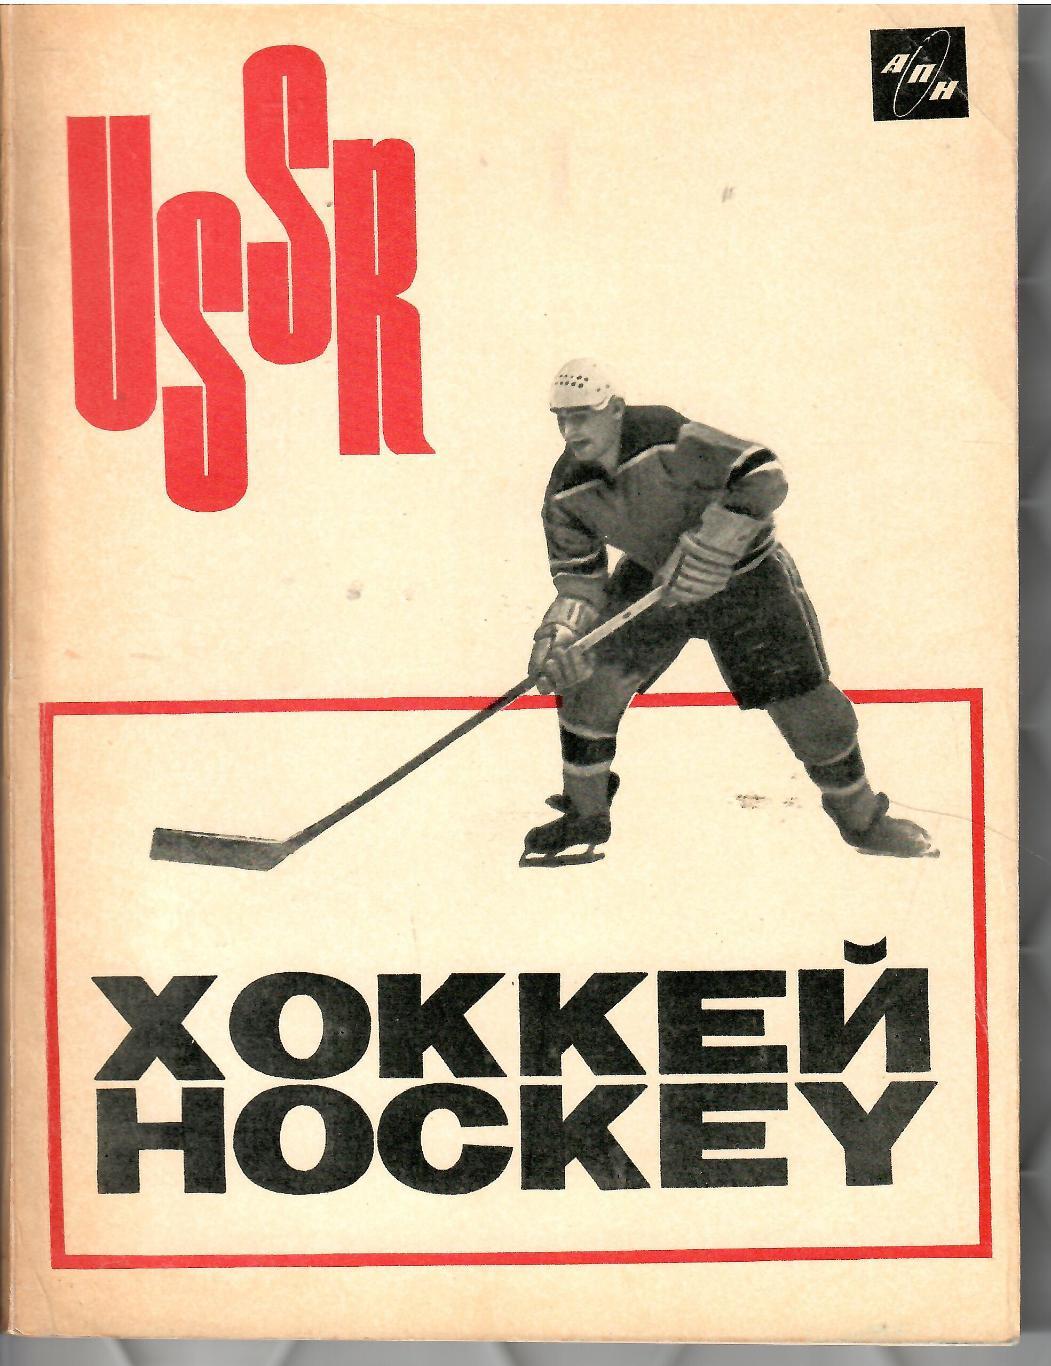 1966 Хоккей в СССР Издательство АПН 96 стр